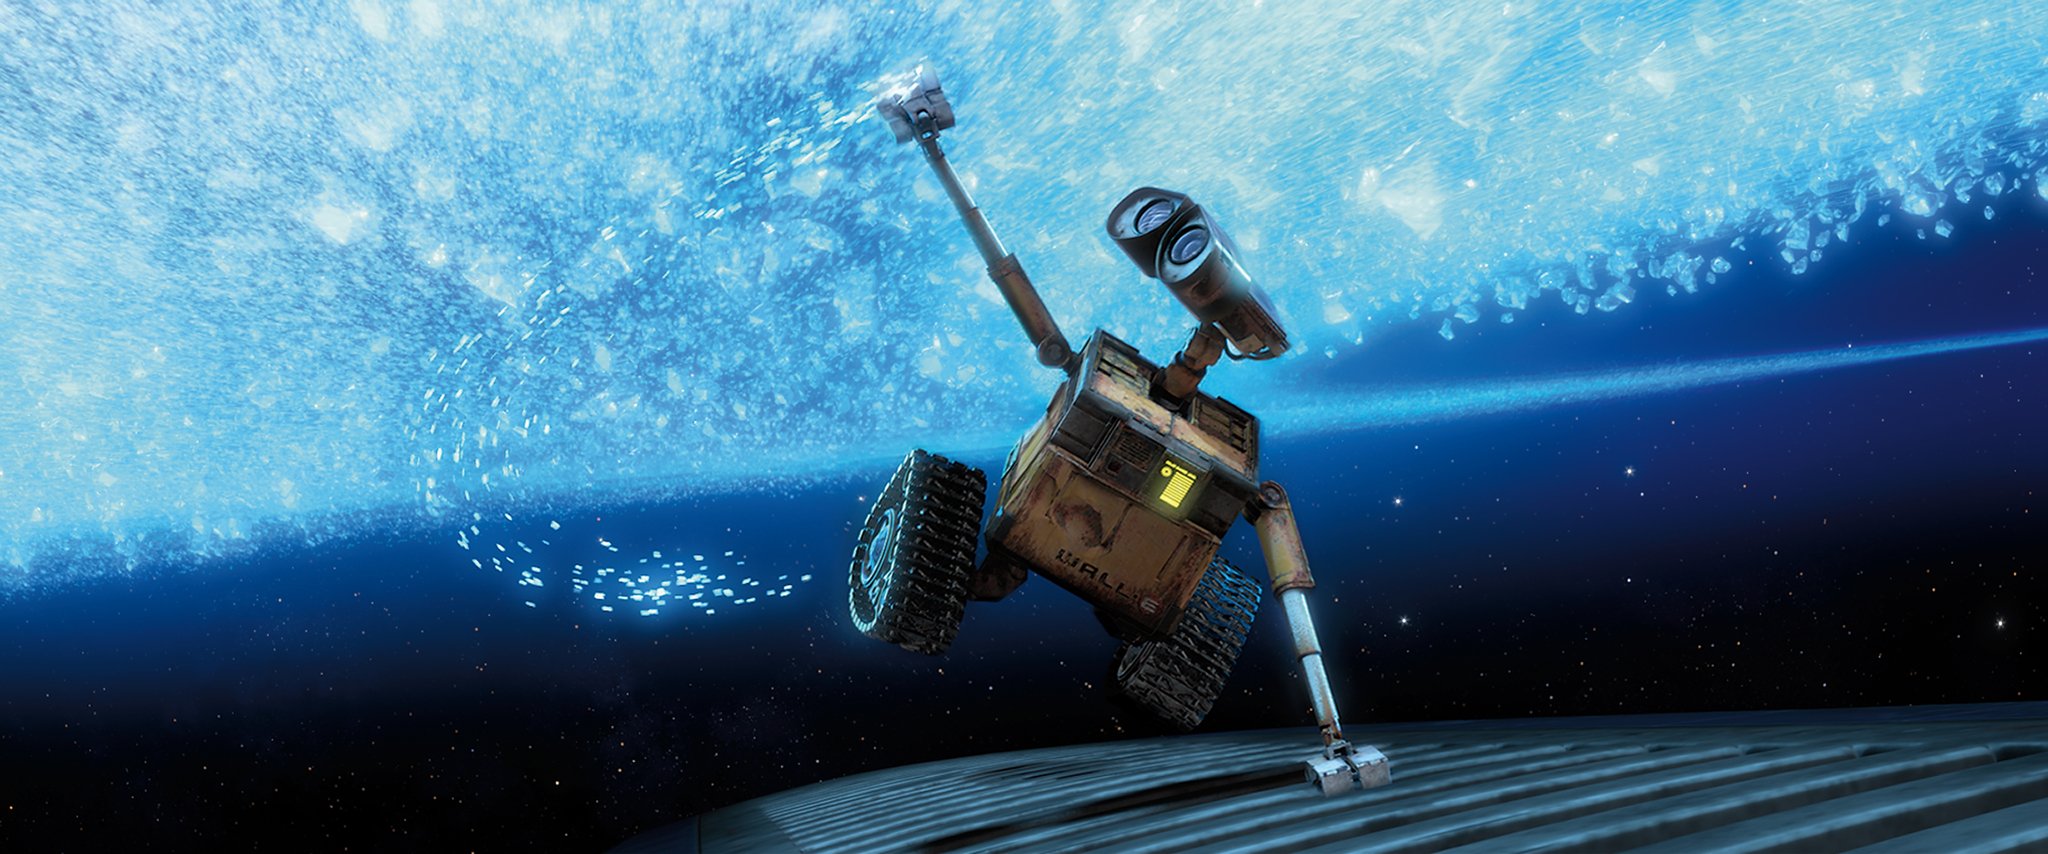 Wall-E (2008).